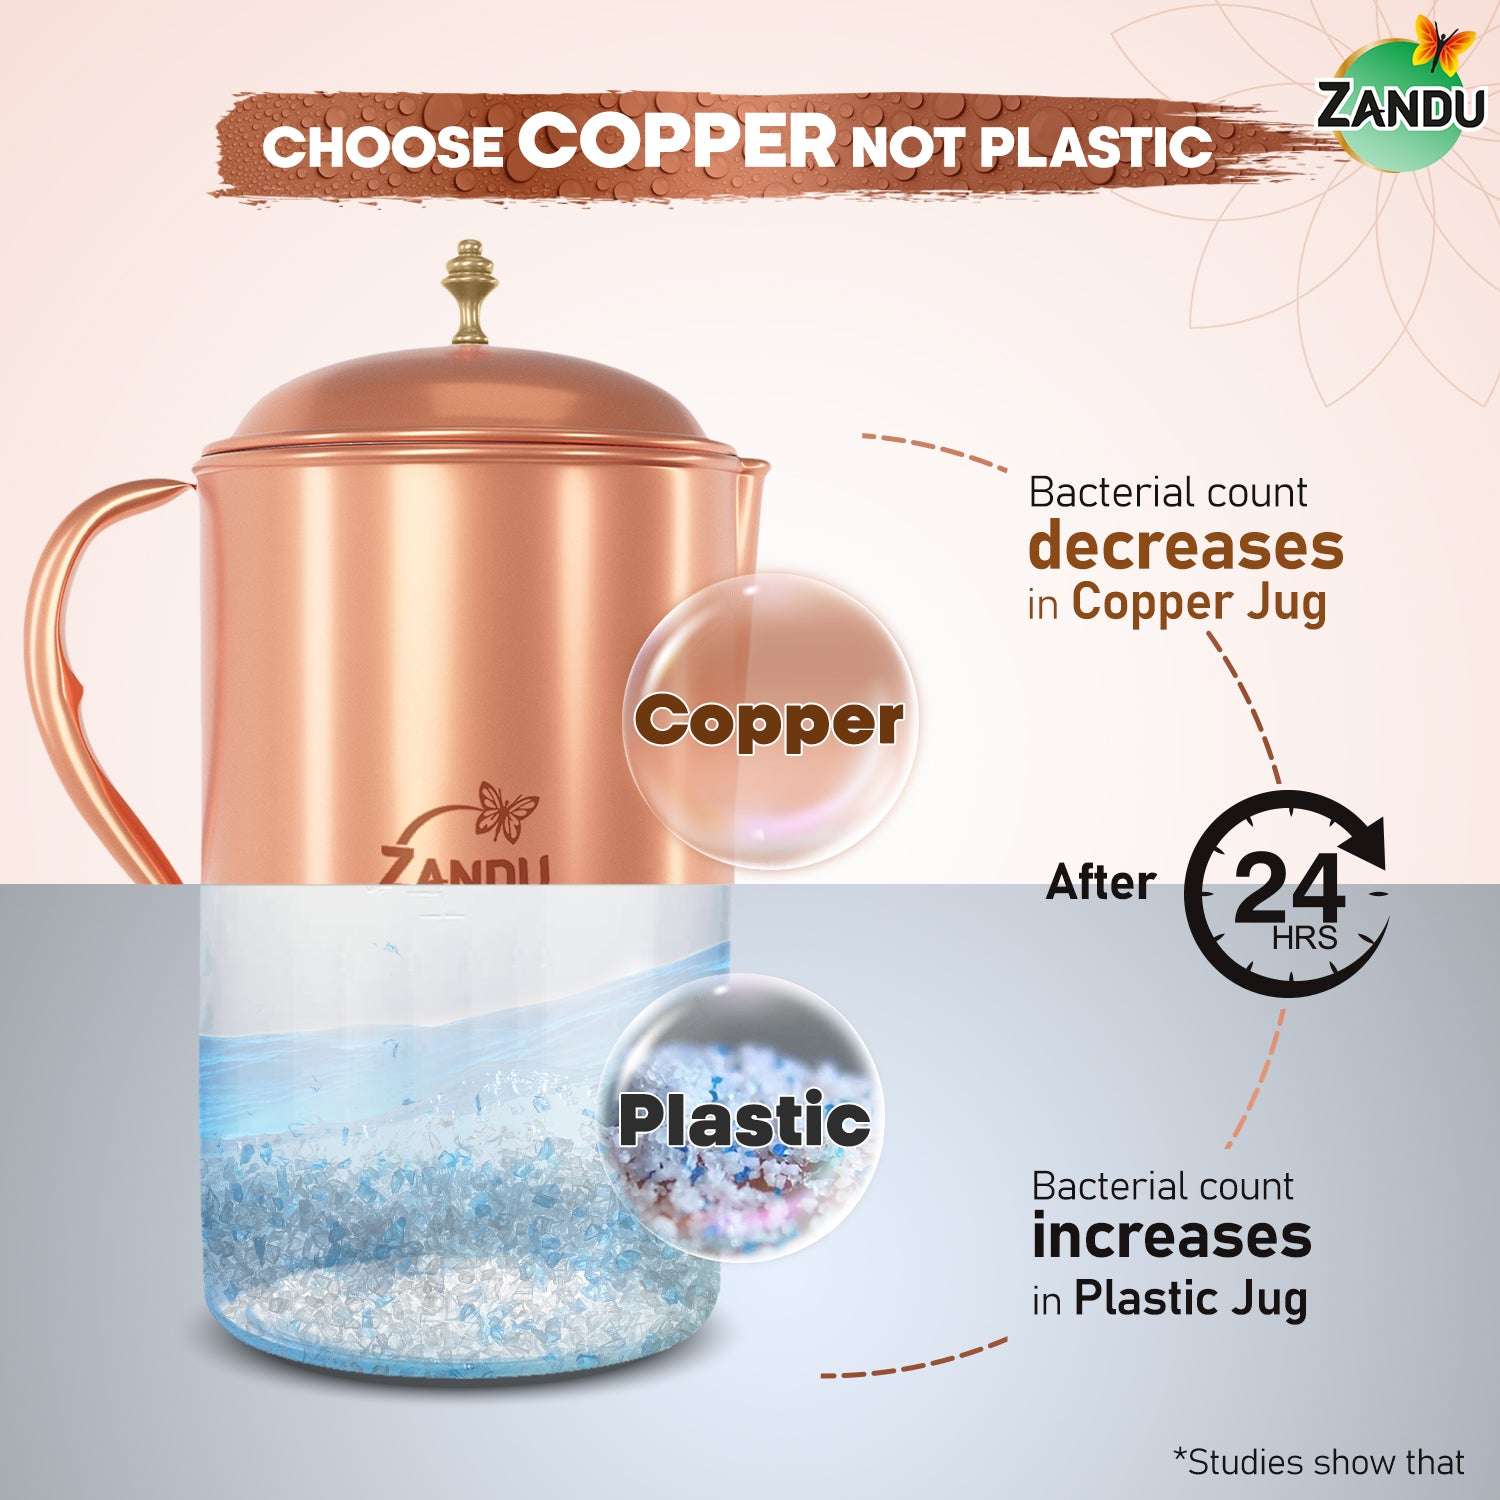 Why choose Zandu Copper jug?